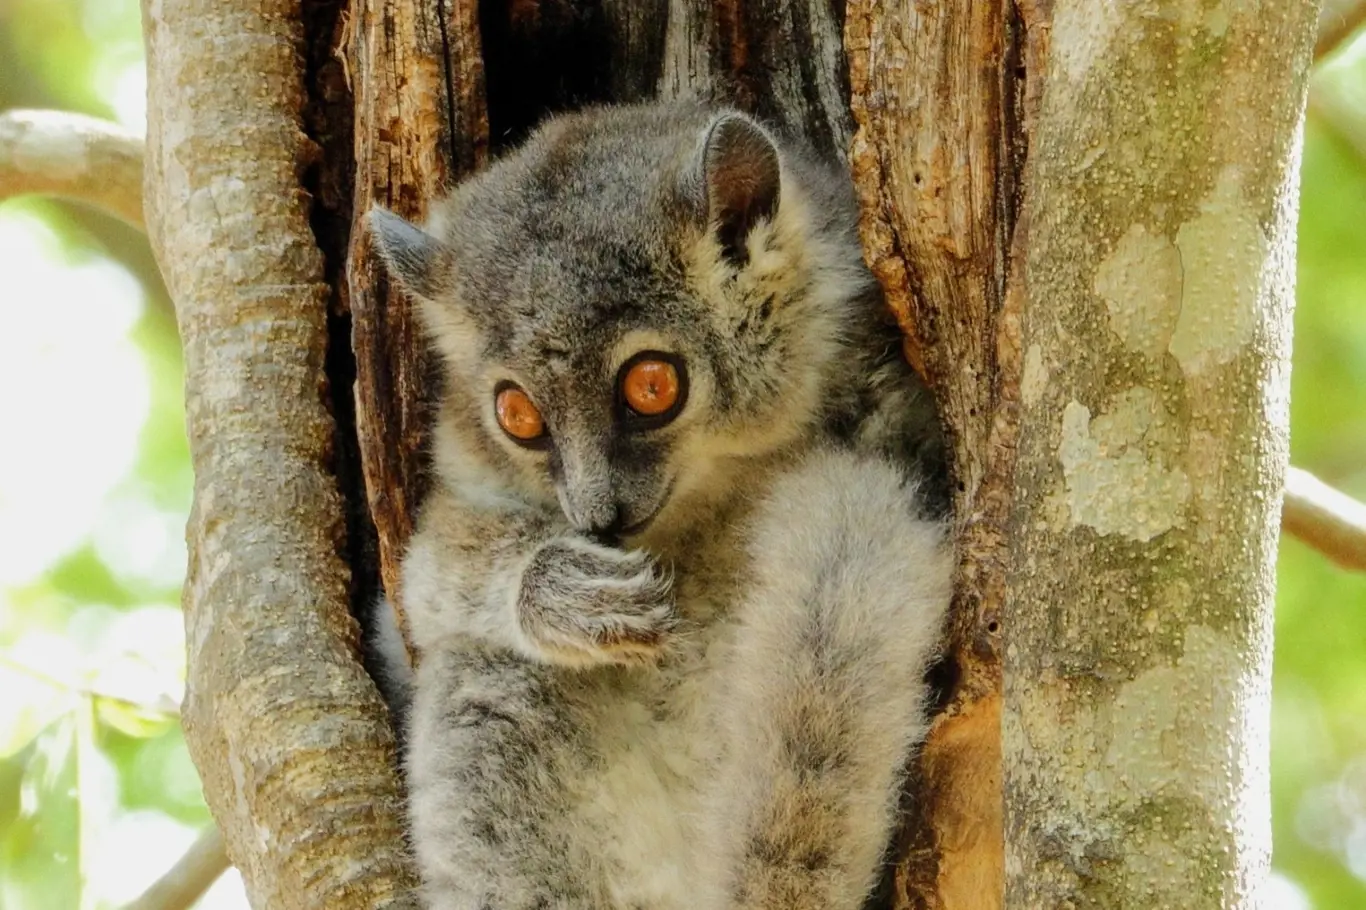 Madagaskar je plný endemických druhů zvířat